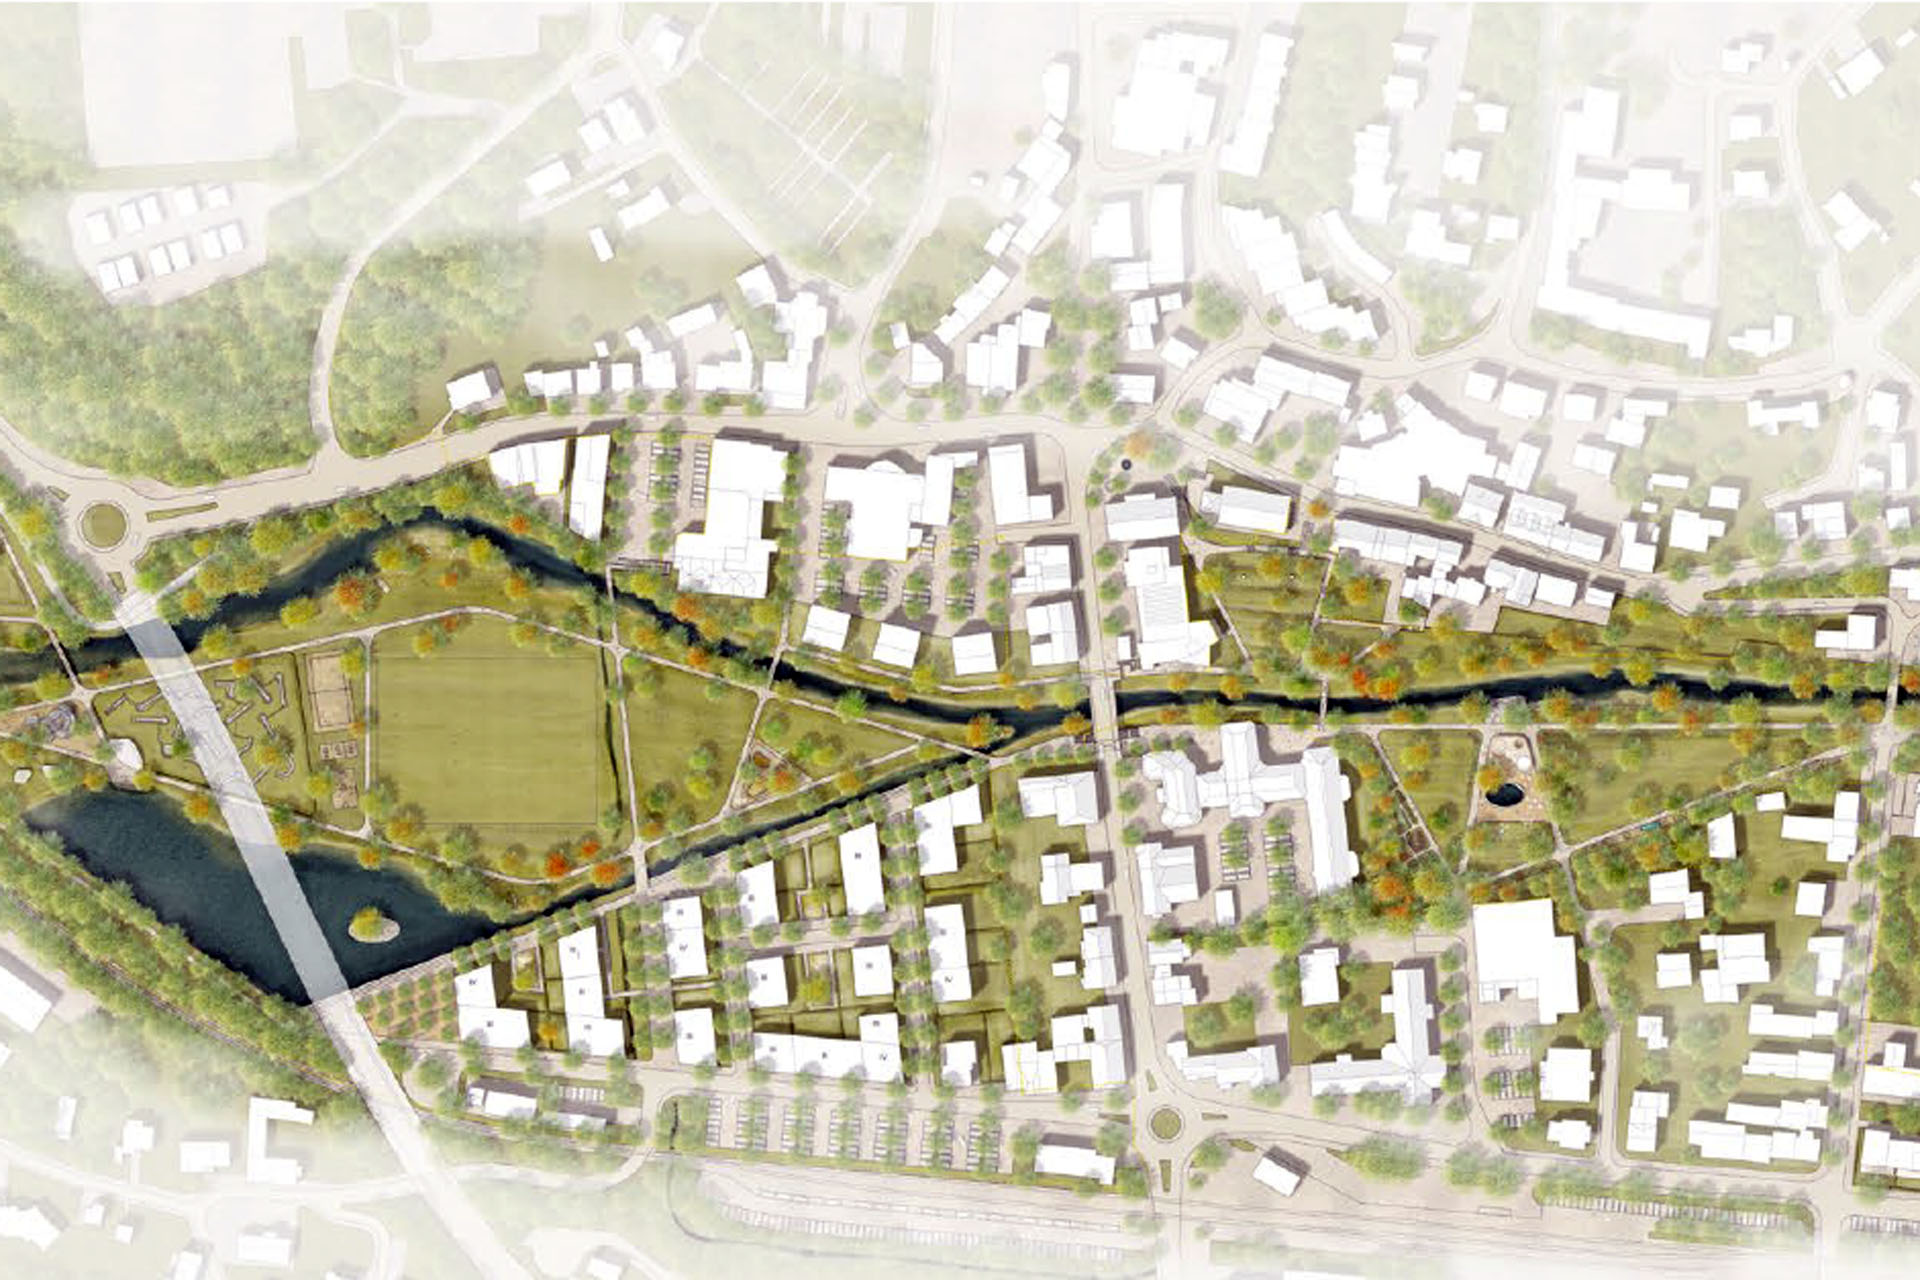 Der Plan zeigt den Bereich der Wiehlaue, der in drei Bauabschnitten umgestaltet wird – zwei Abschnitte sind abgeschlossen. Plan: FSWLA Landschaftsarchitektur